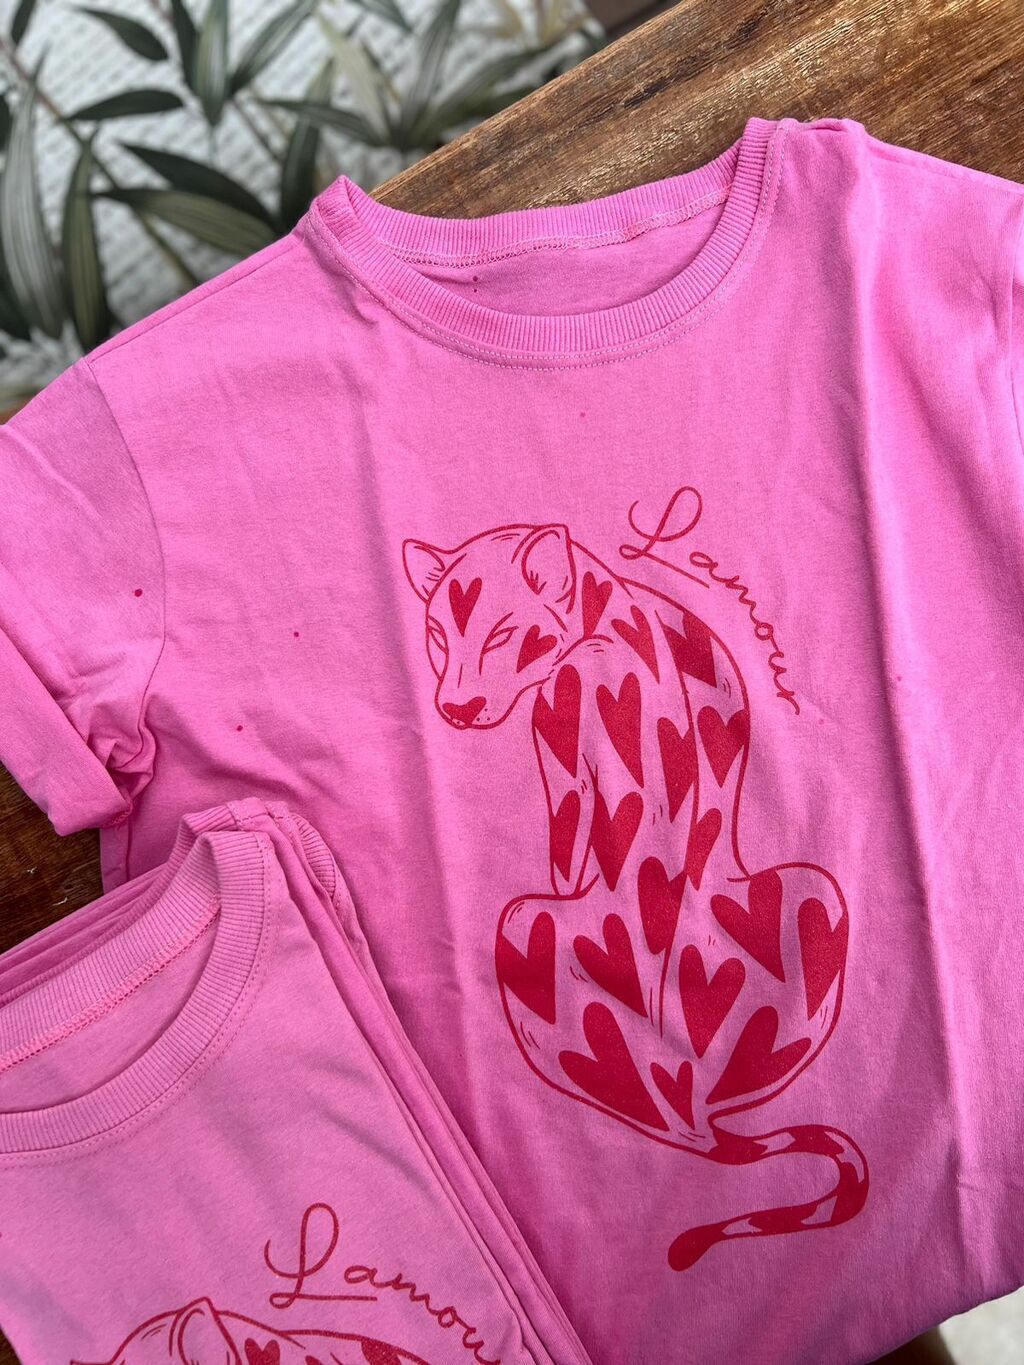 Camiseta feminina T-shirt básica algodão rosa pink em Promoção na